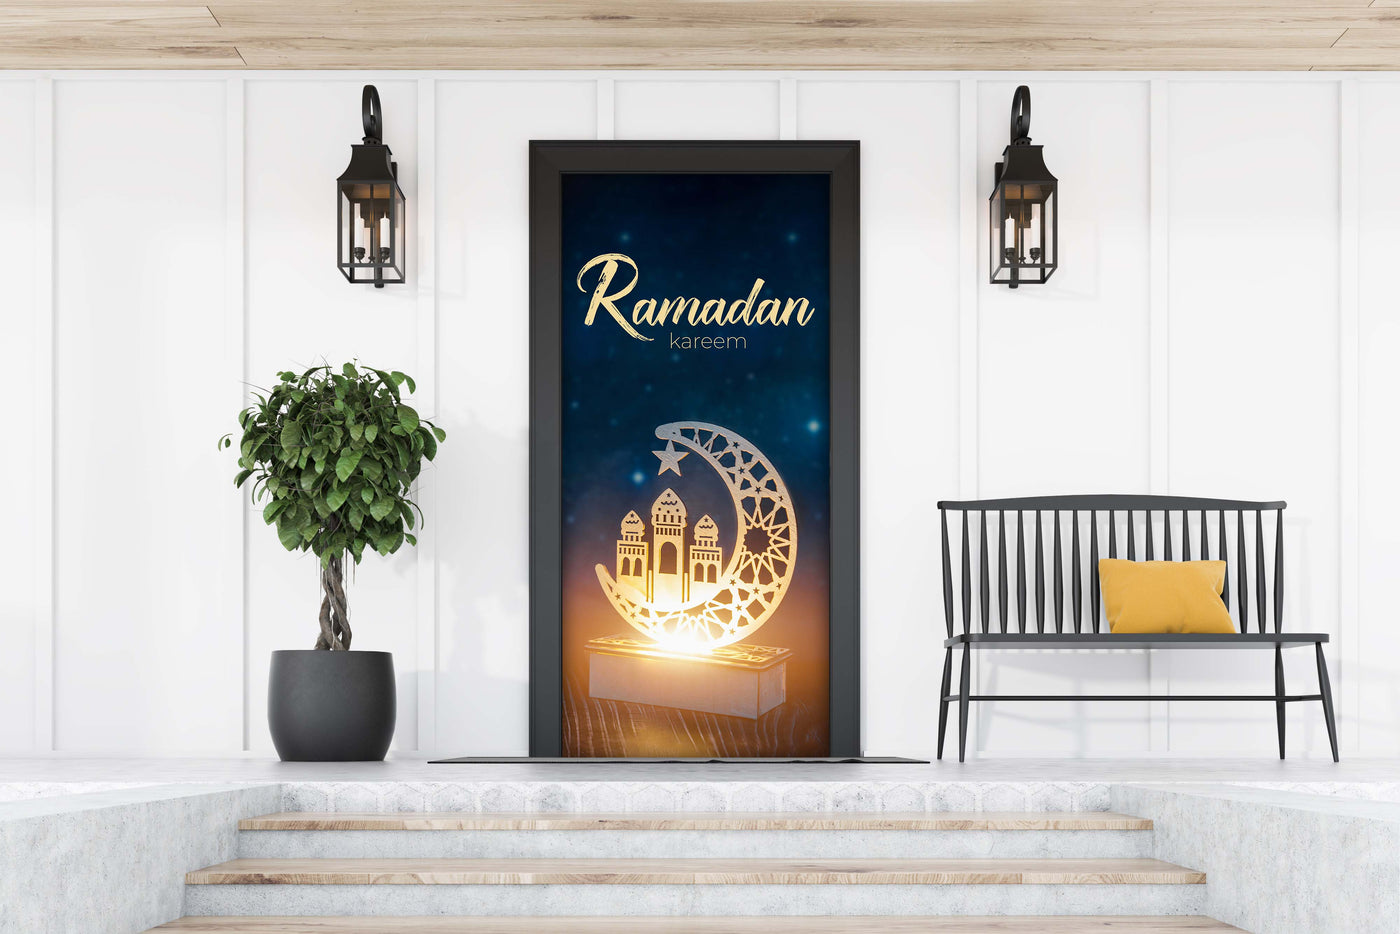 מנורת רמדאן נגד שמי ערב שלווים ויפים